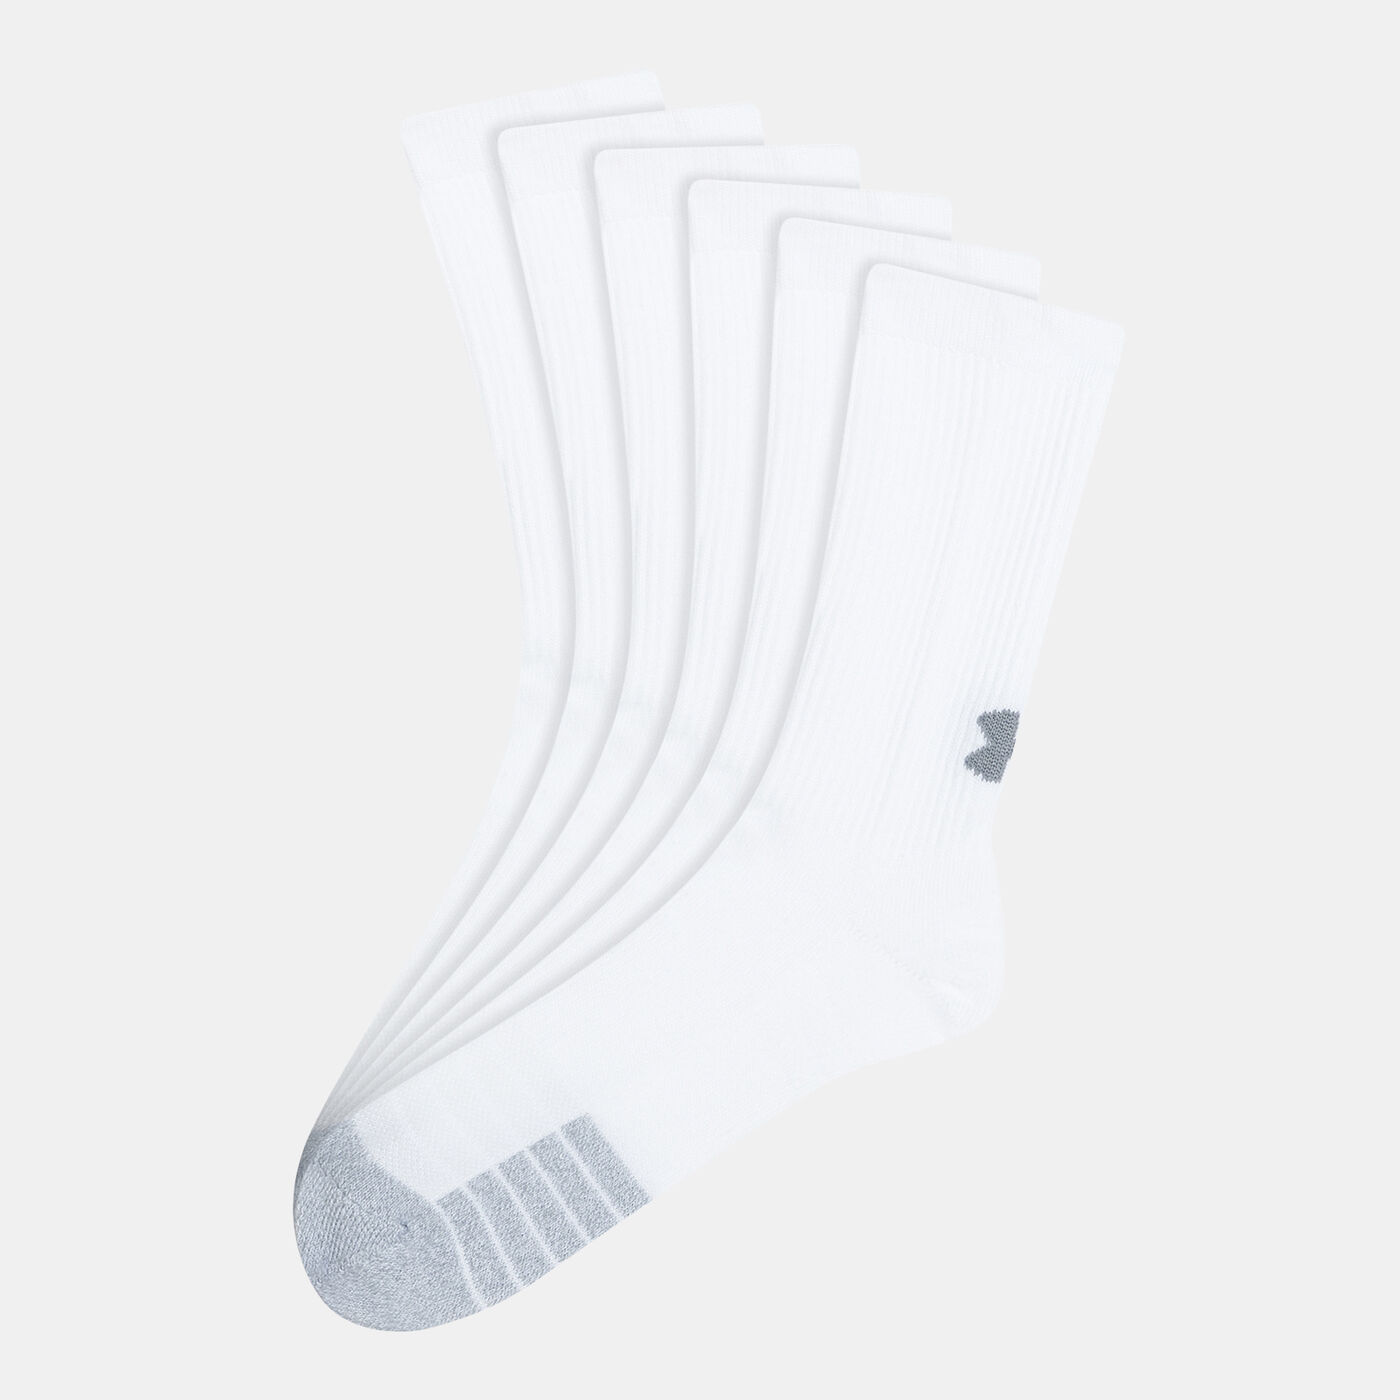 HeatGear® Crew Socks (3 Pack)